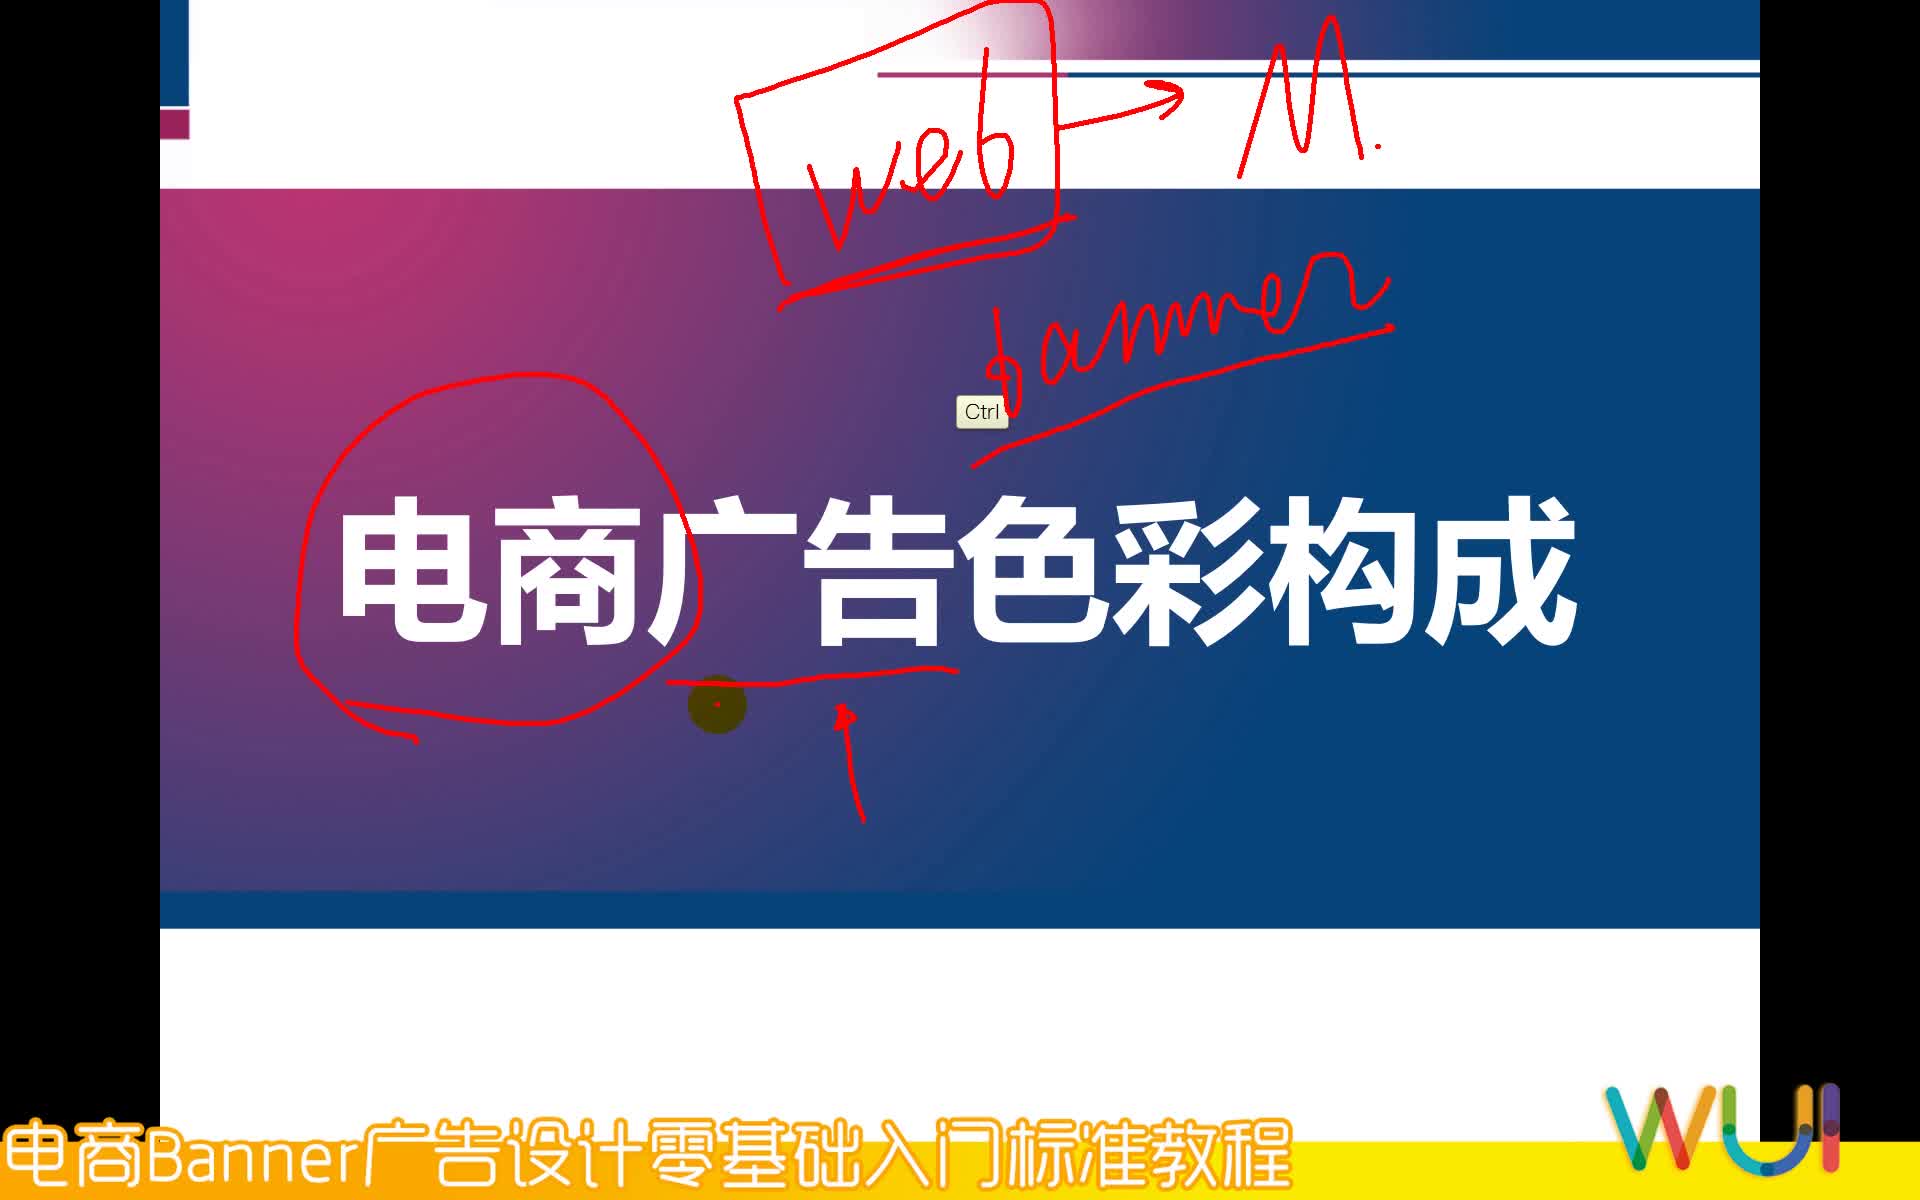 【吴刚】电商Banner广告设计初级入门标准视频教程